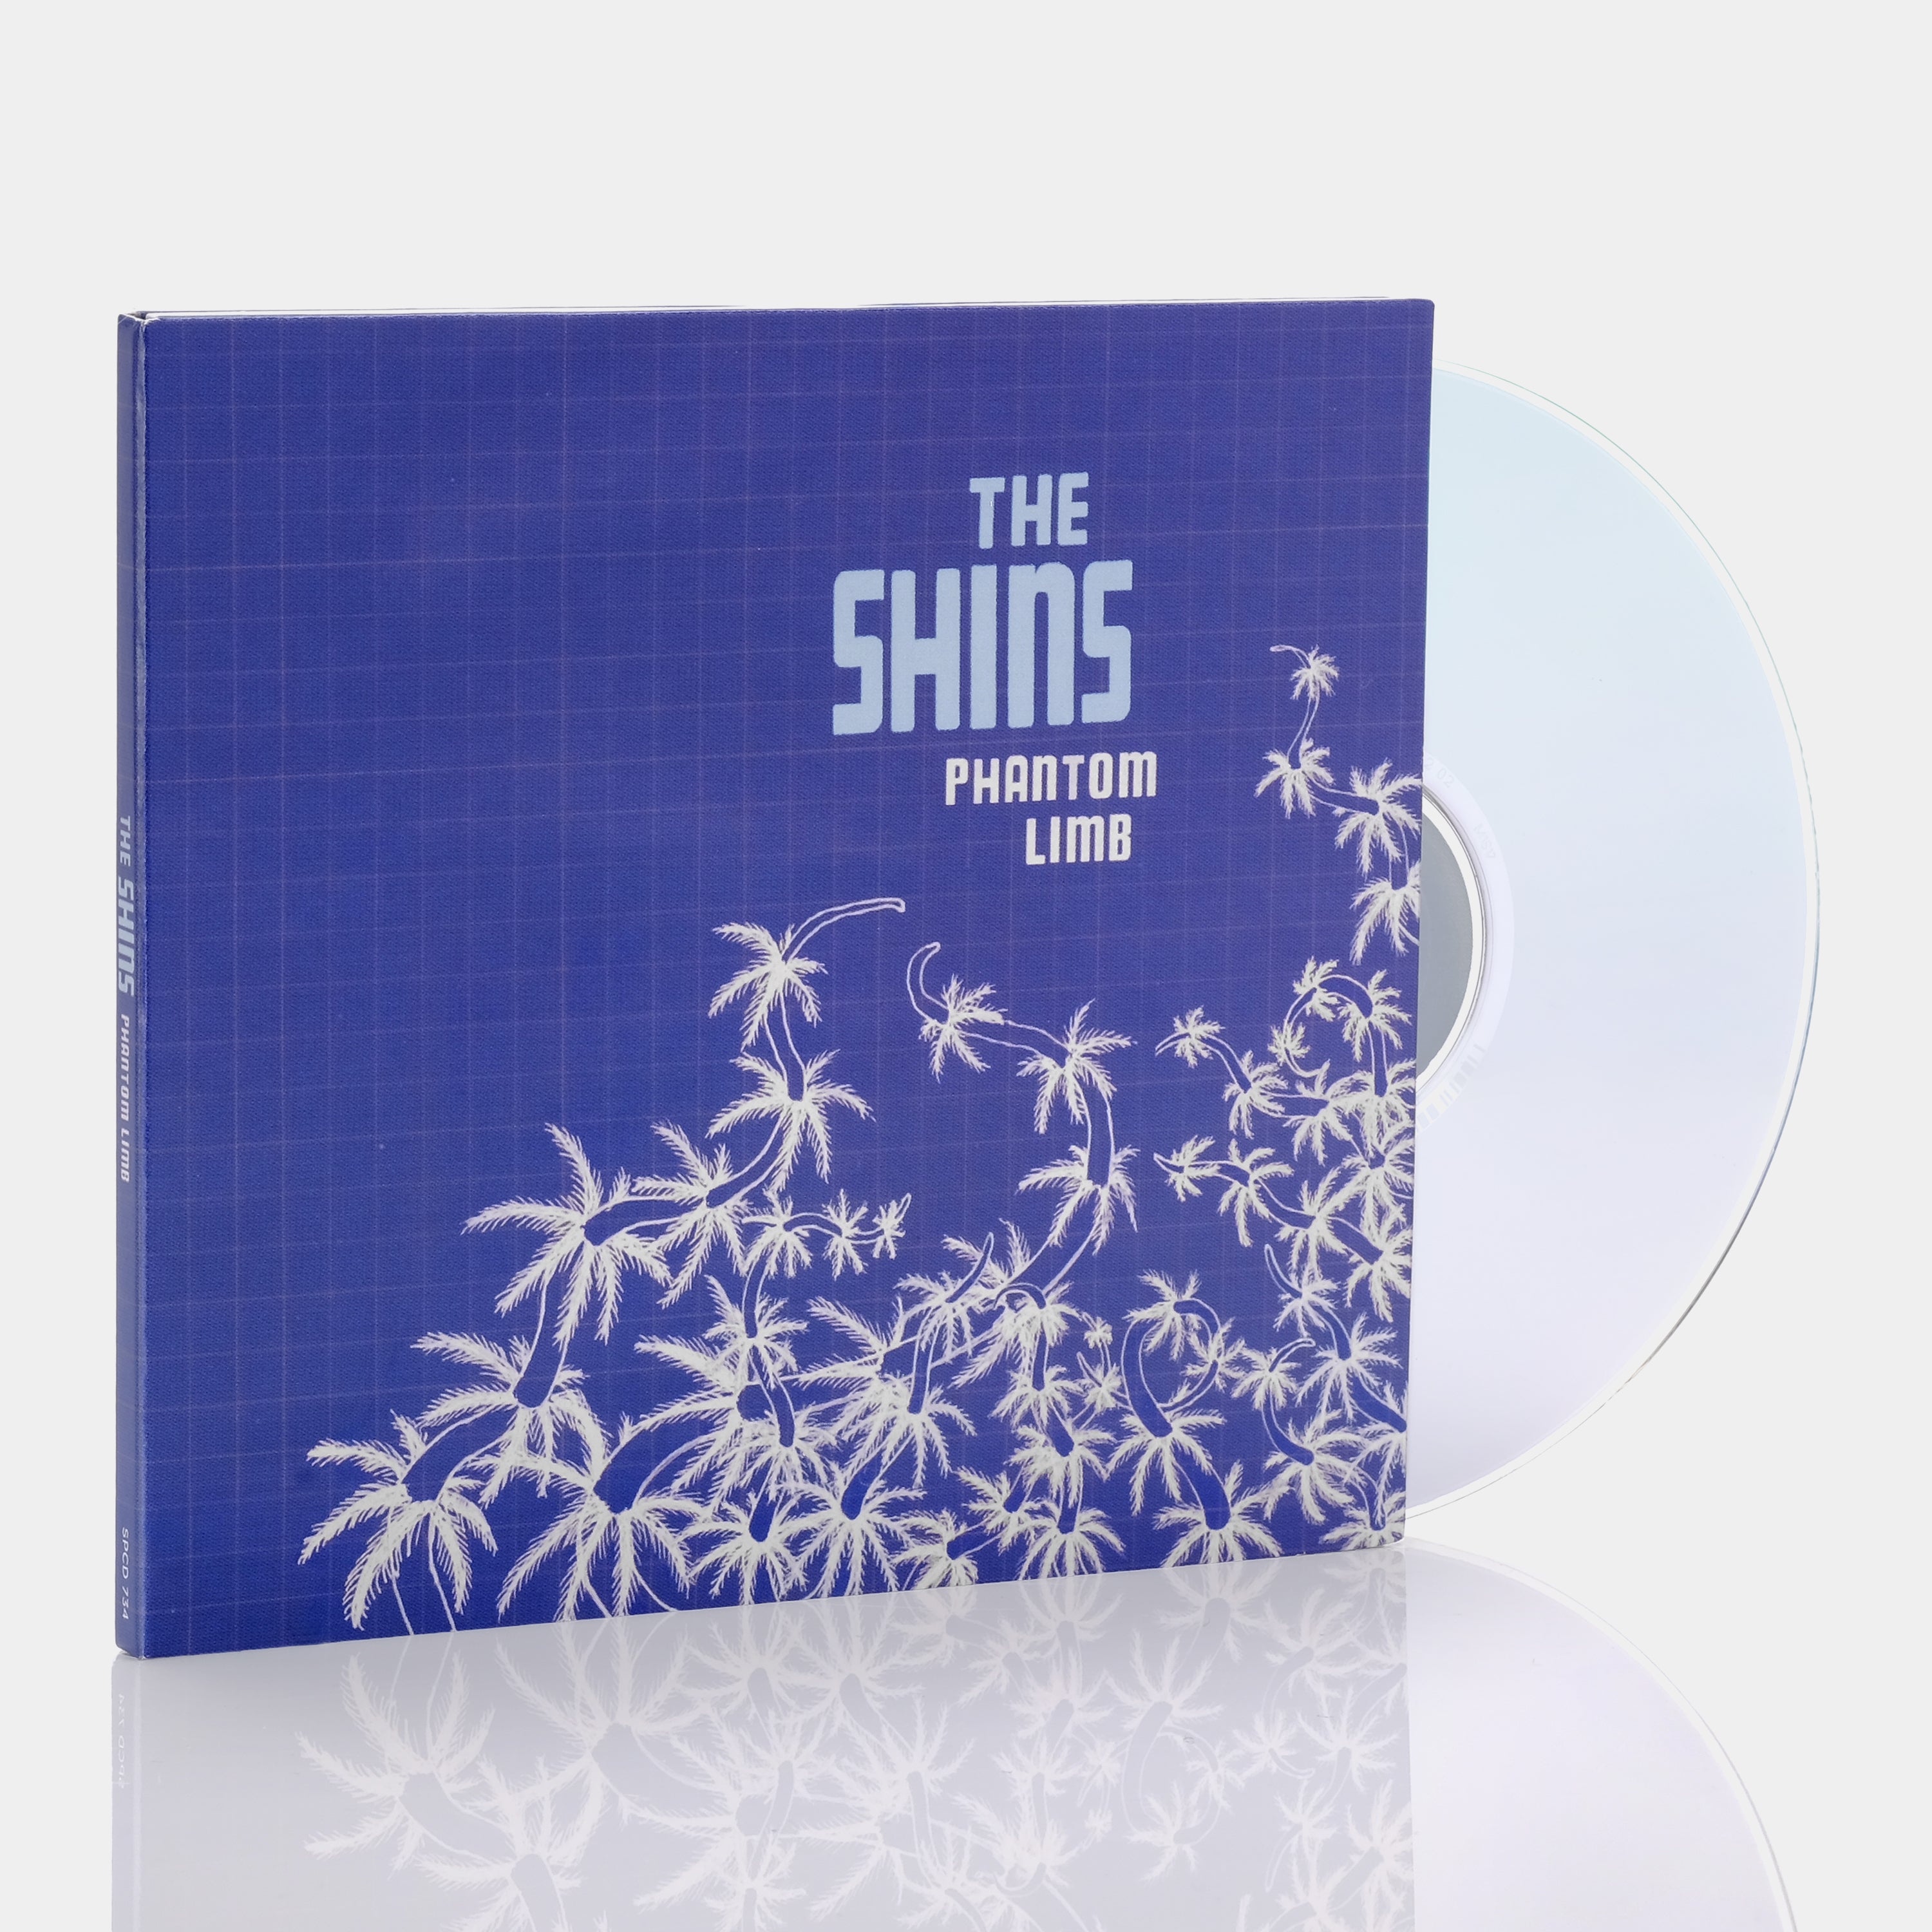 The Shins - Phantom Limb CD